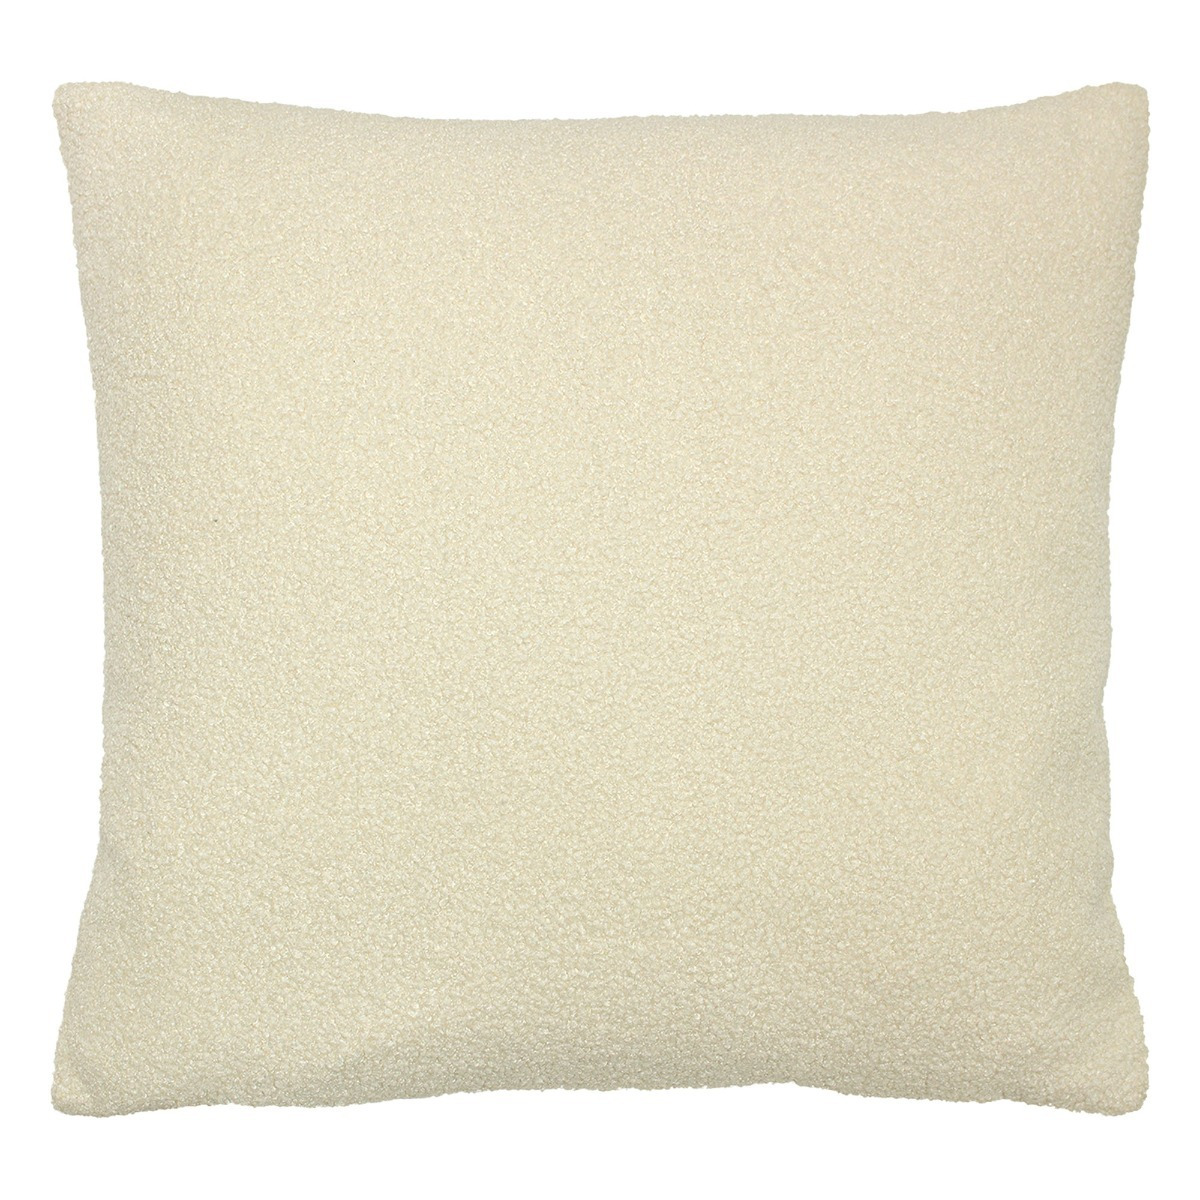 Cream Boucle Cushion, Square - Barker & Stonehouse - image 1